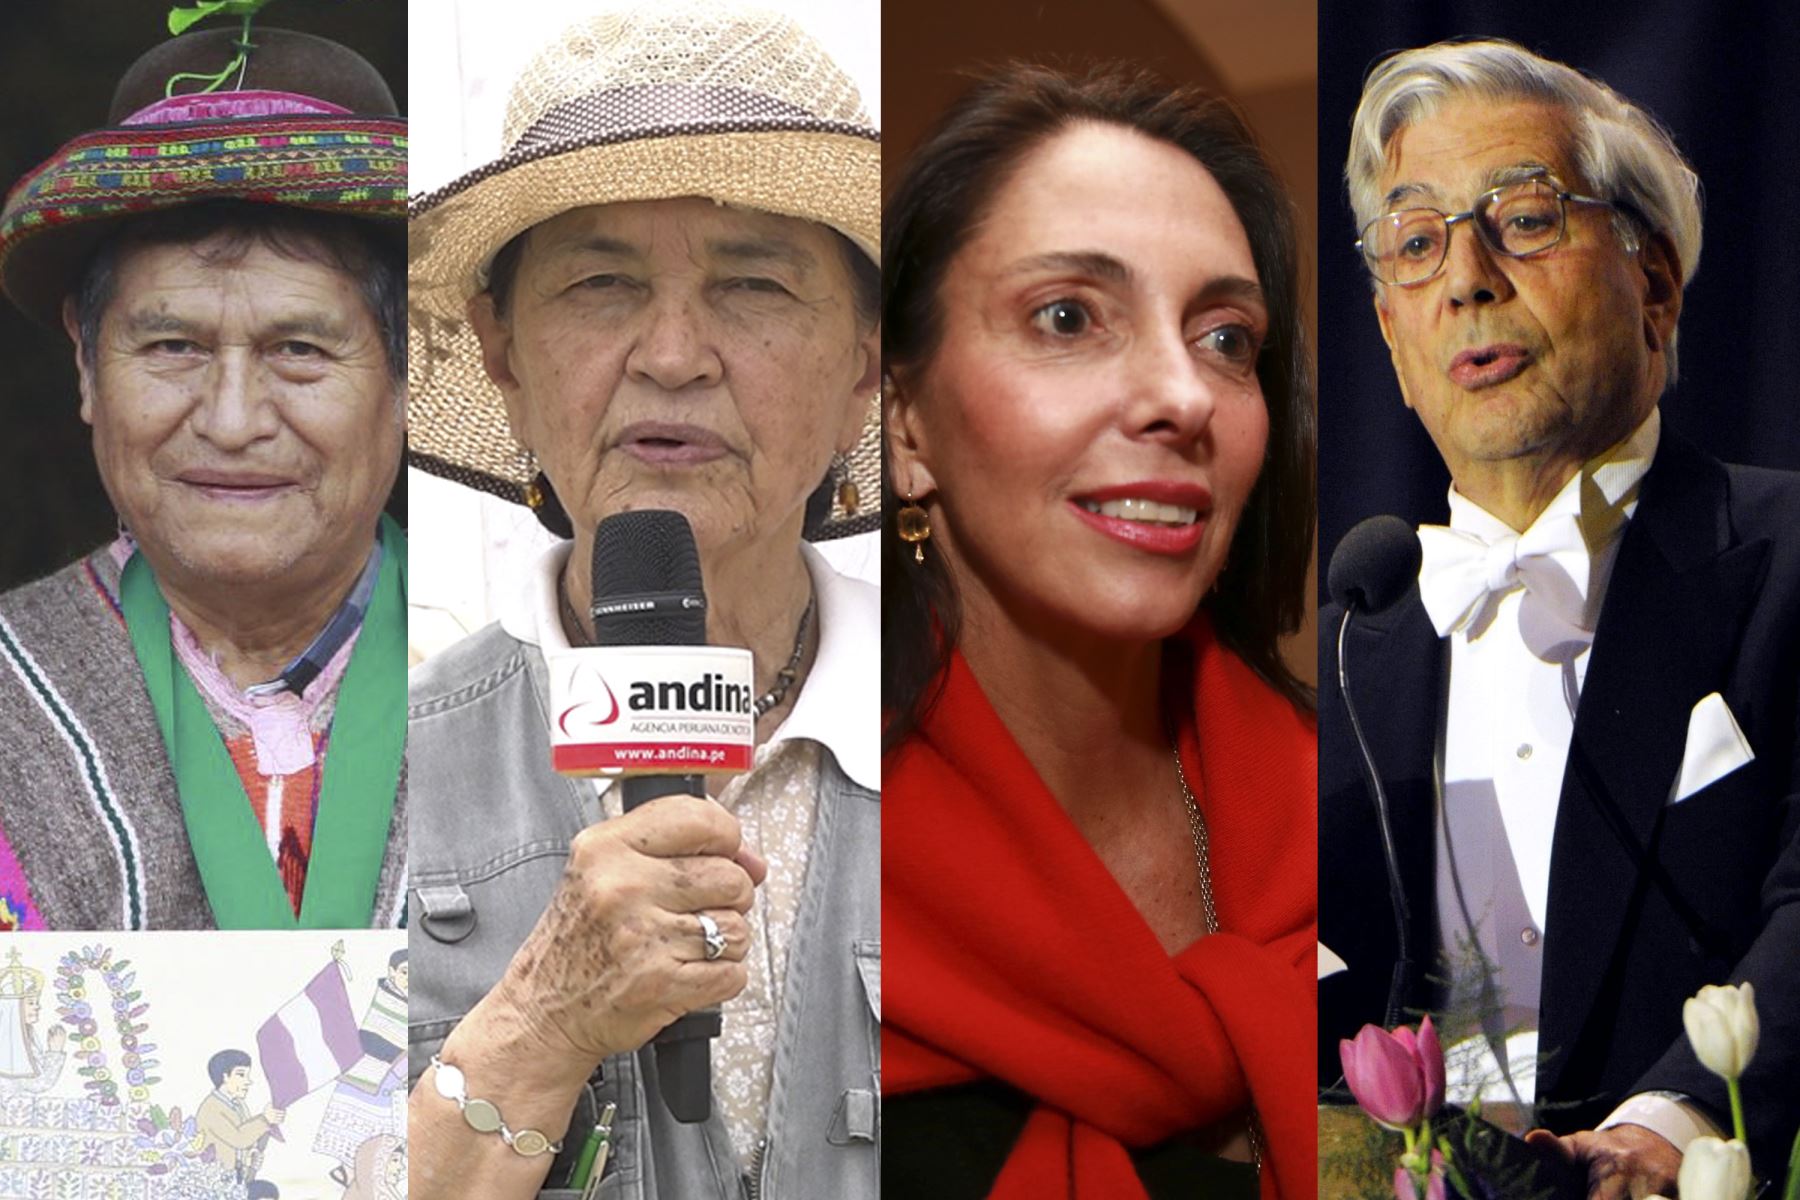 El artista Primitivo Evanán, la arqueóloga Ruth Shady, la empresaria Inés Temple y el escritor Mario Vargas Llosa, son algunos de los personajes que entrevistará la periodista Alejandra Puente en "Peruanos al Bicentenario" de TV Perú. ANDINA/Difusión